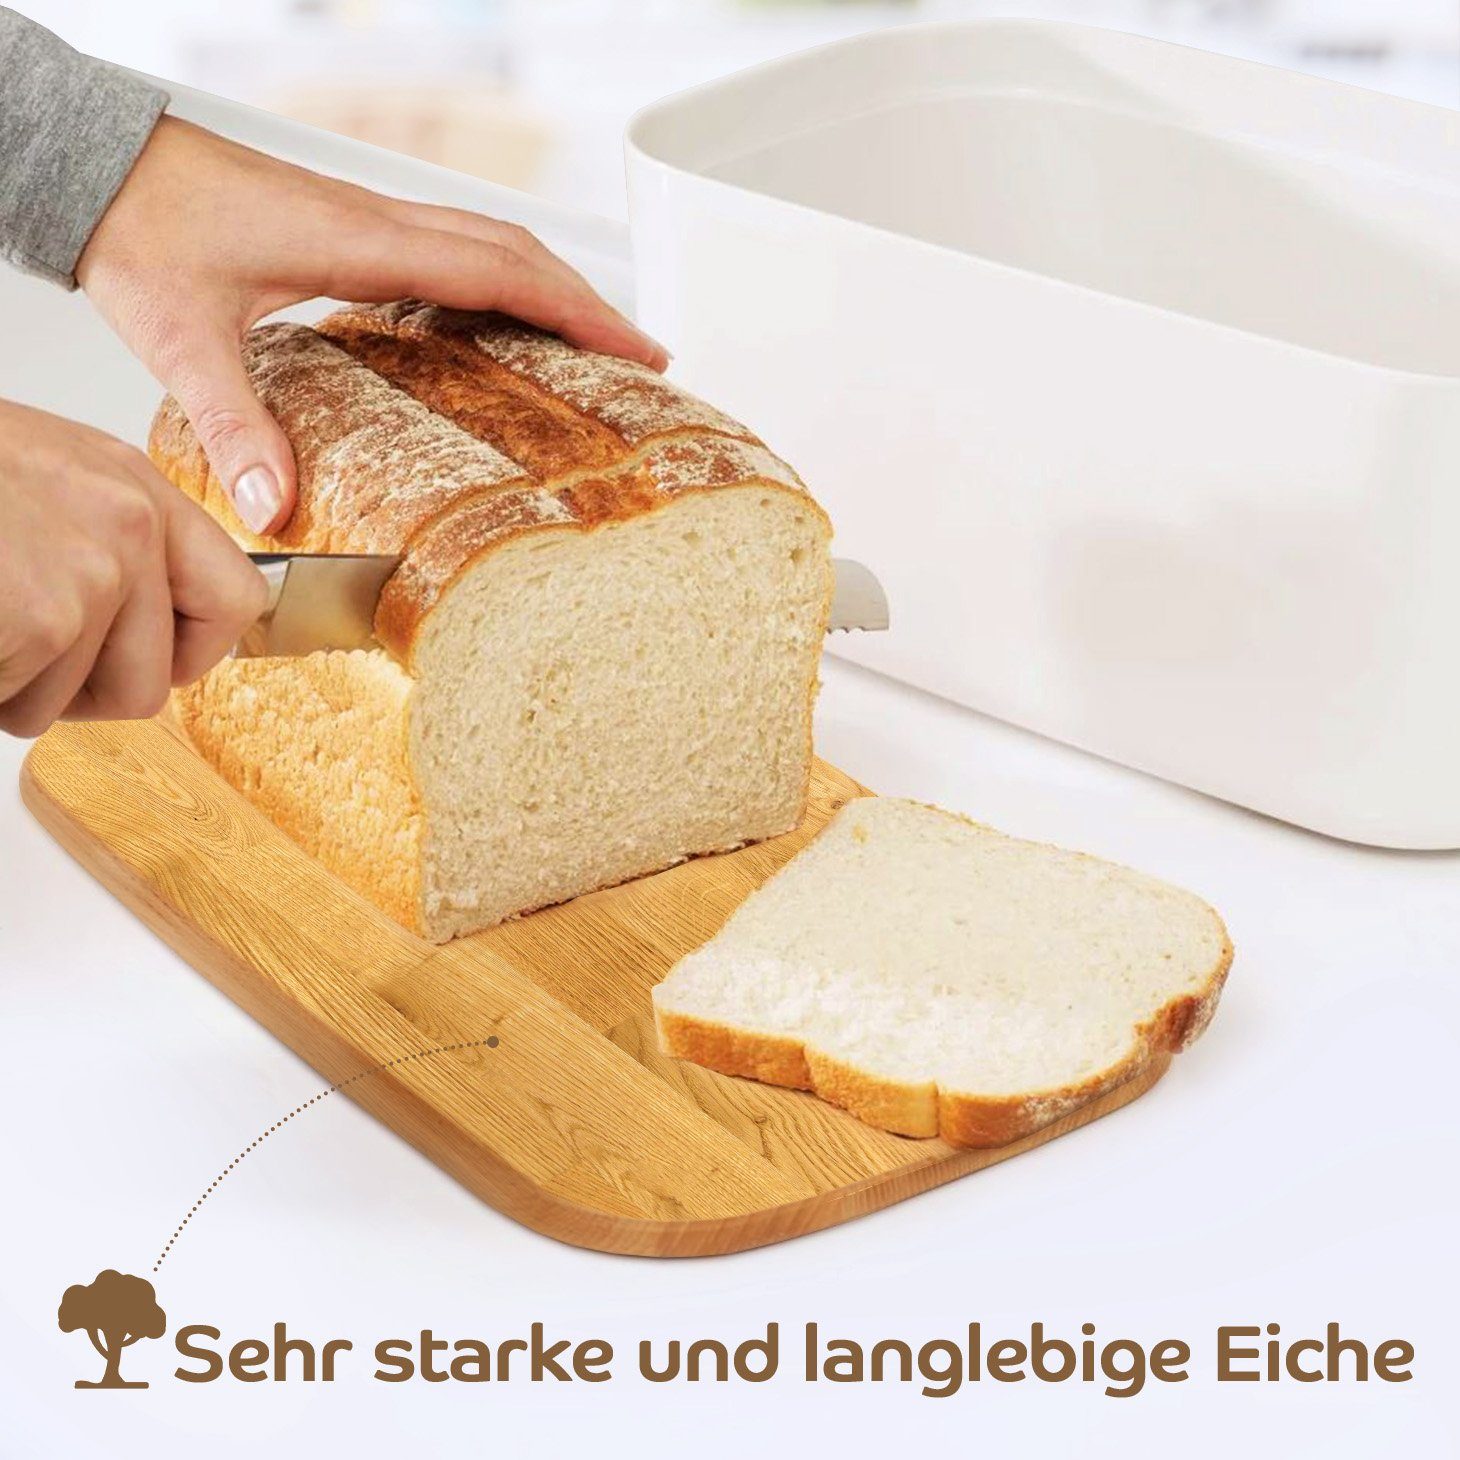 Brotbox, mit BPA-frei, europäische Schneidebrett Produktion 2in1 aus KONZEPT Brotkasten Weiß Holz Groß, Brotkasten